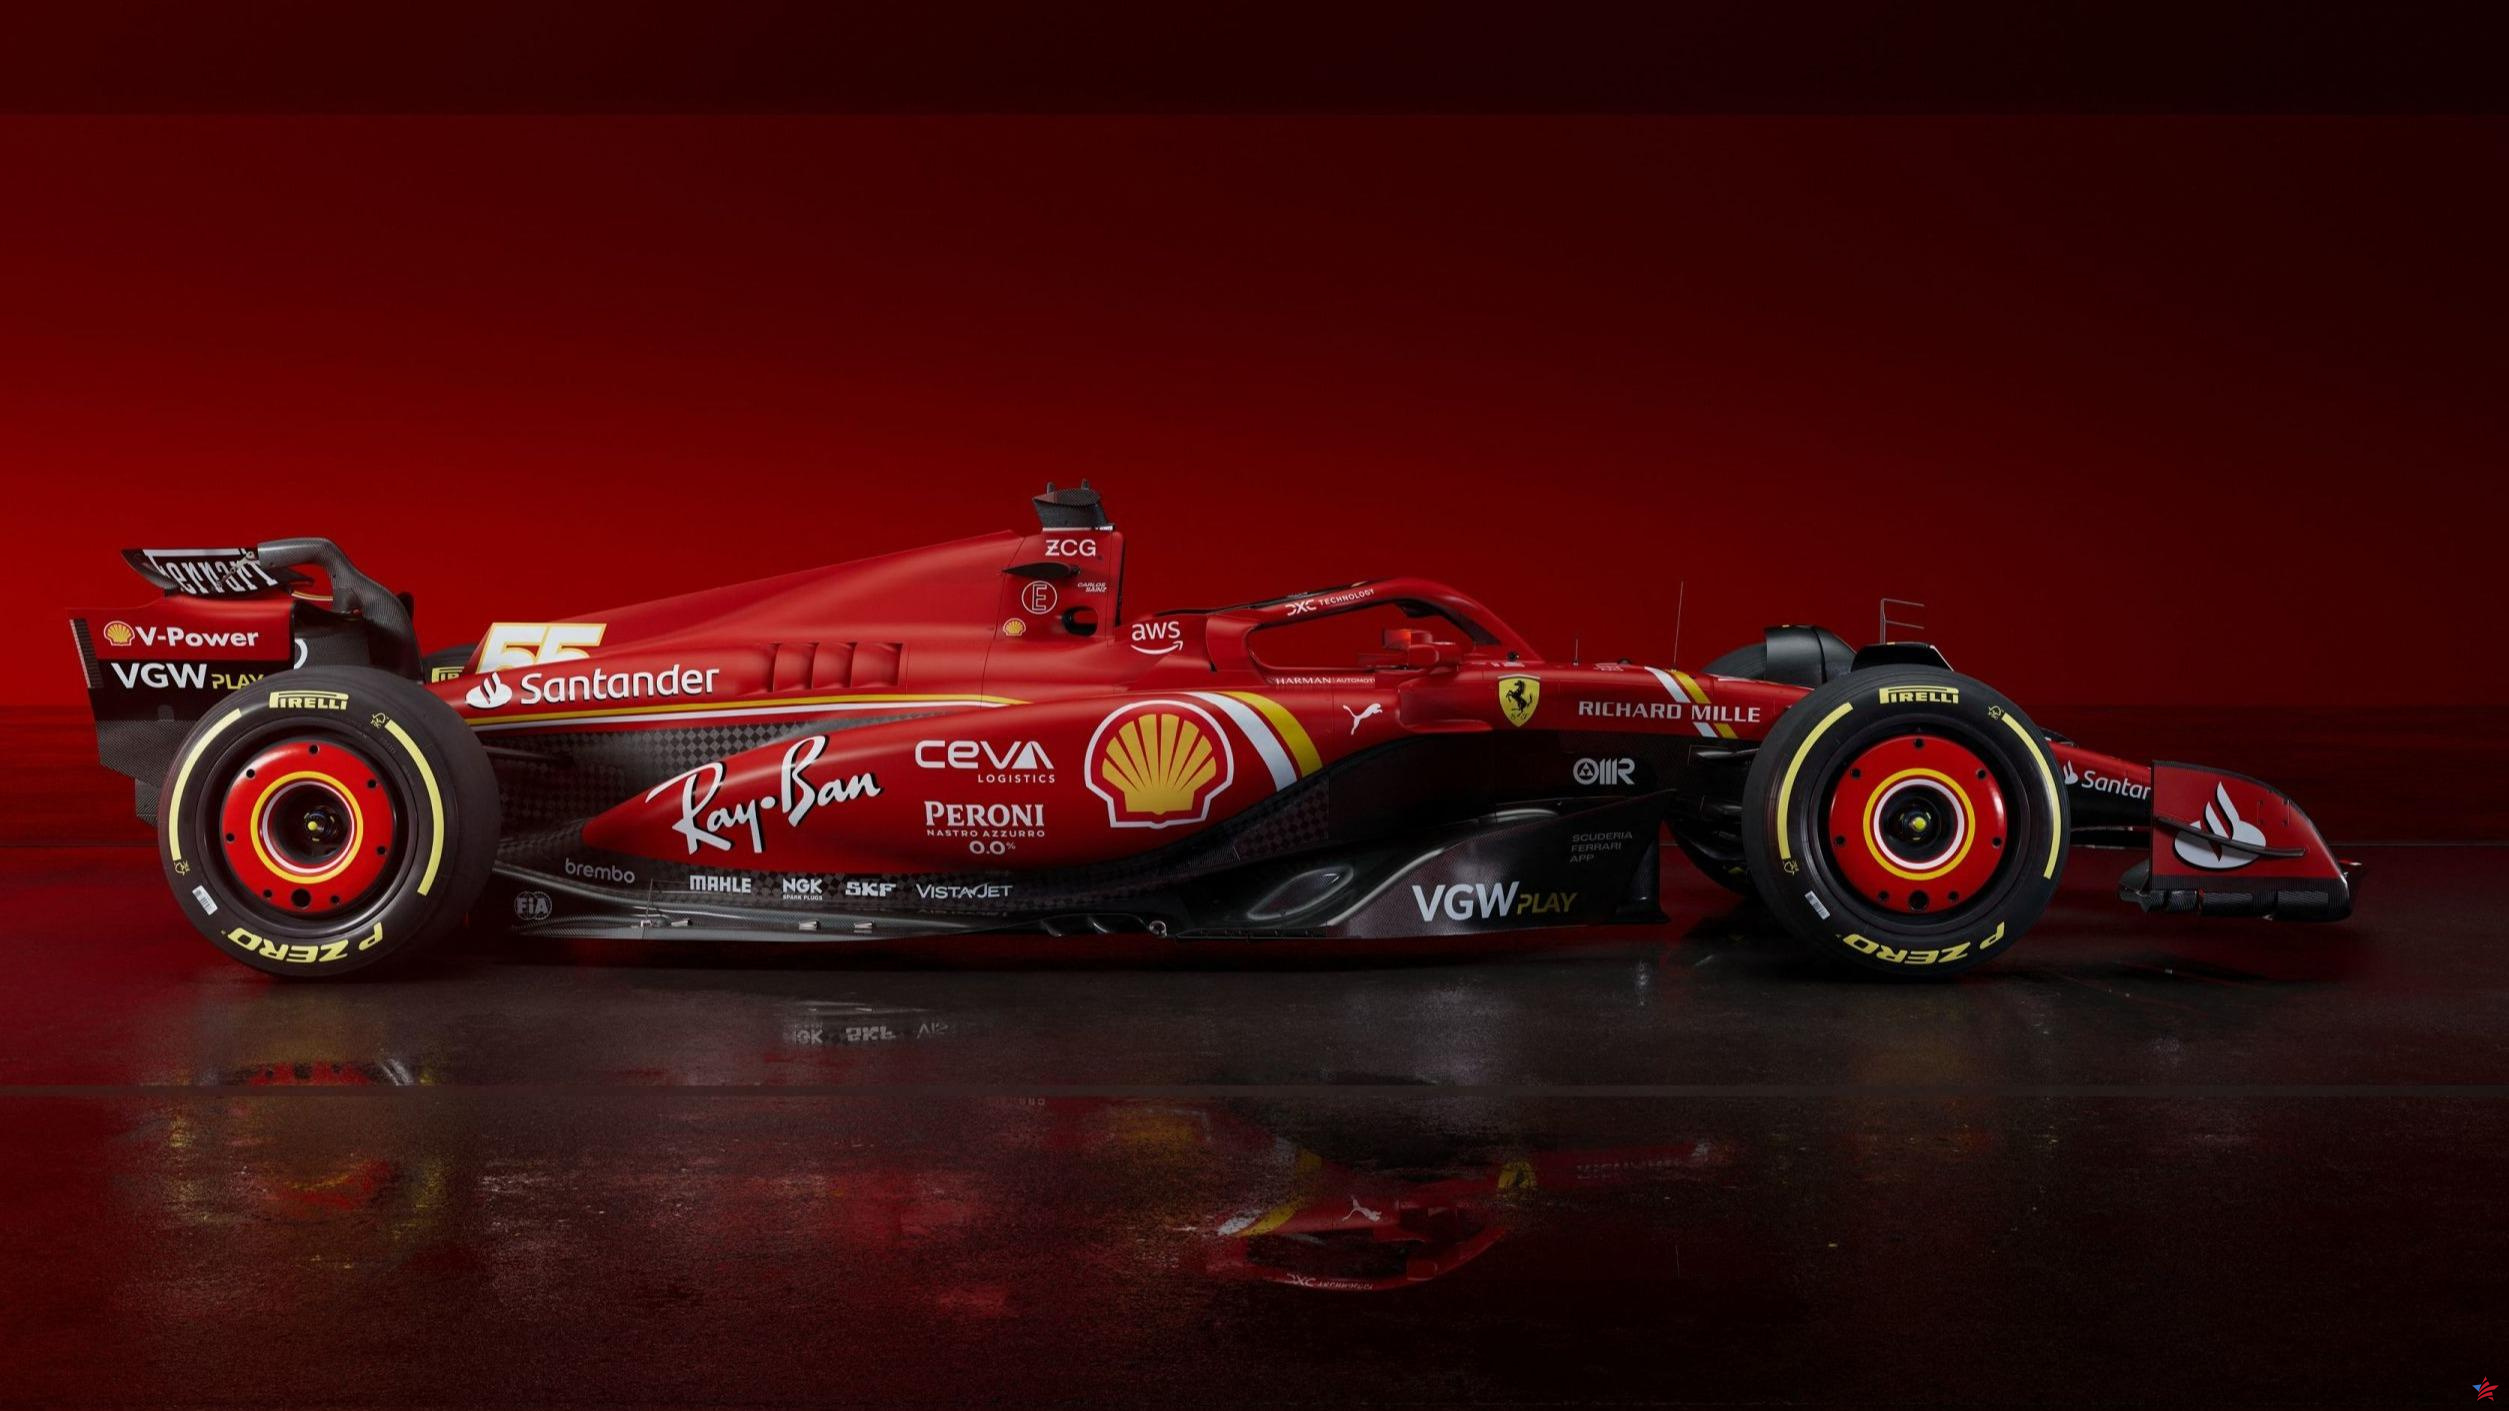 Fórmula 1: el nuevo monoplaza de Ferrari “en continuidad” con el anterior